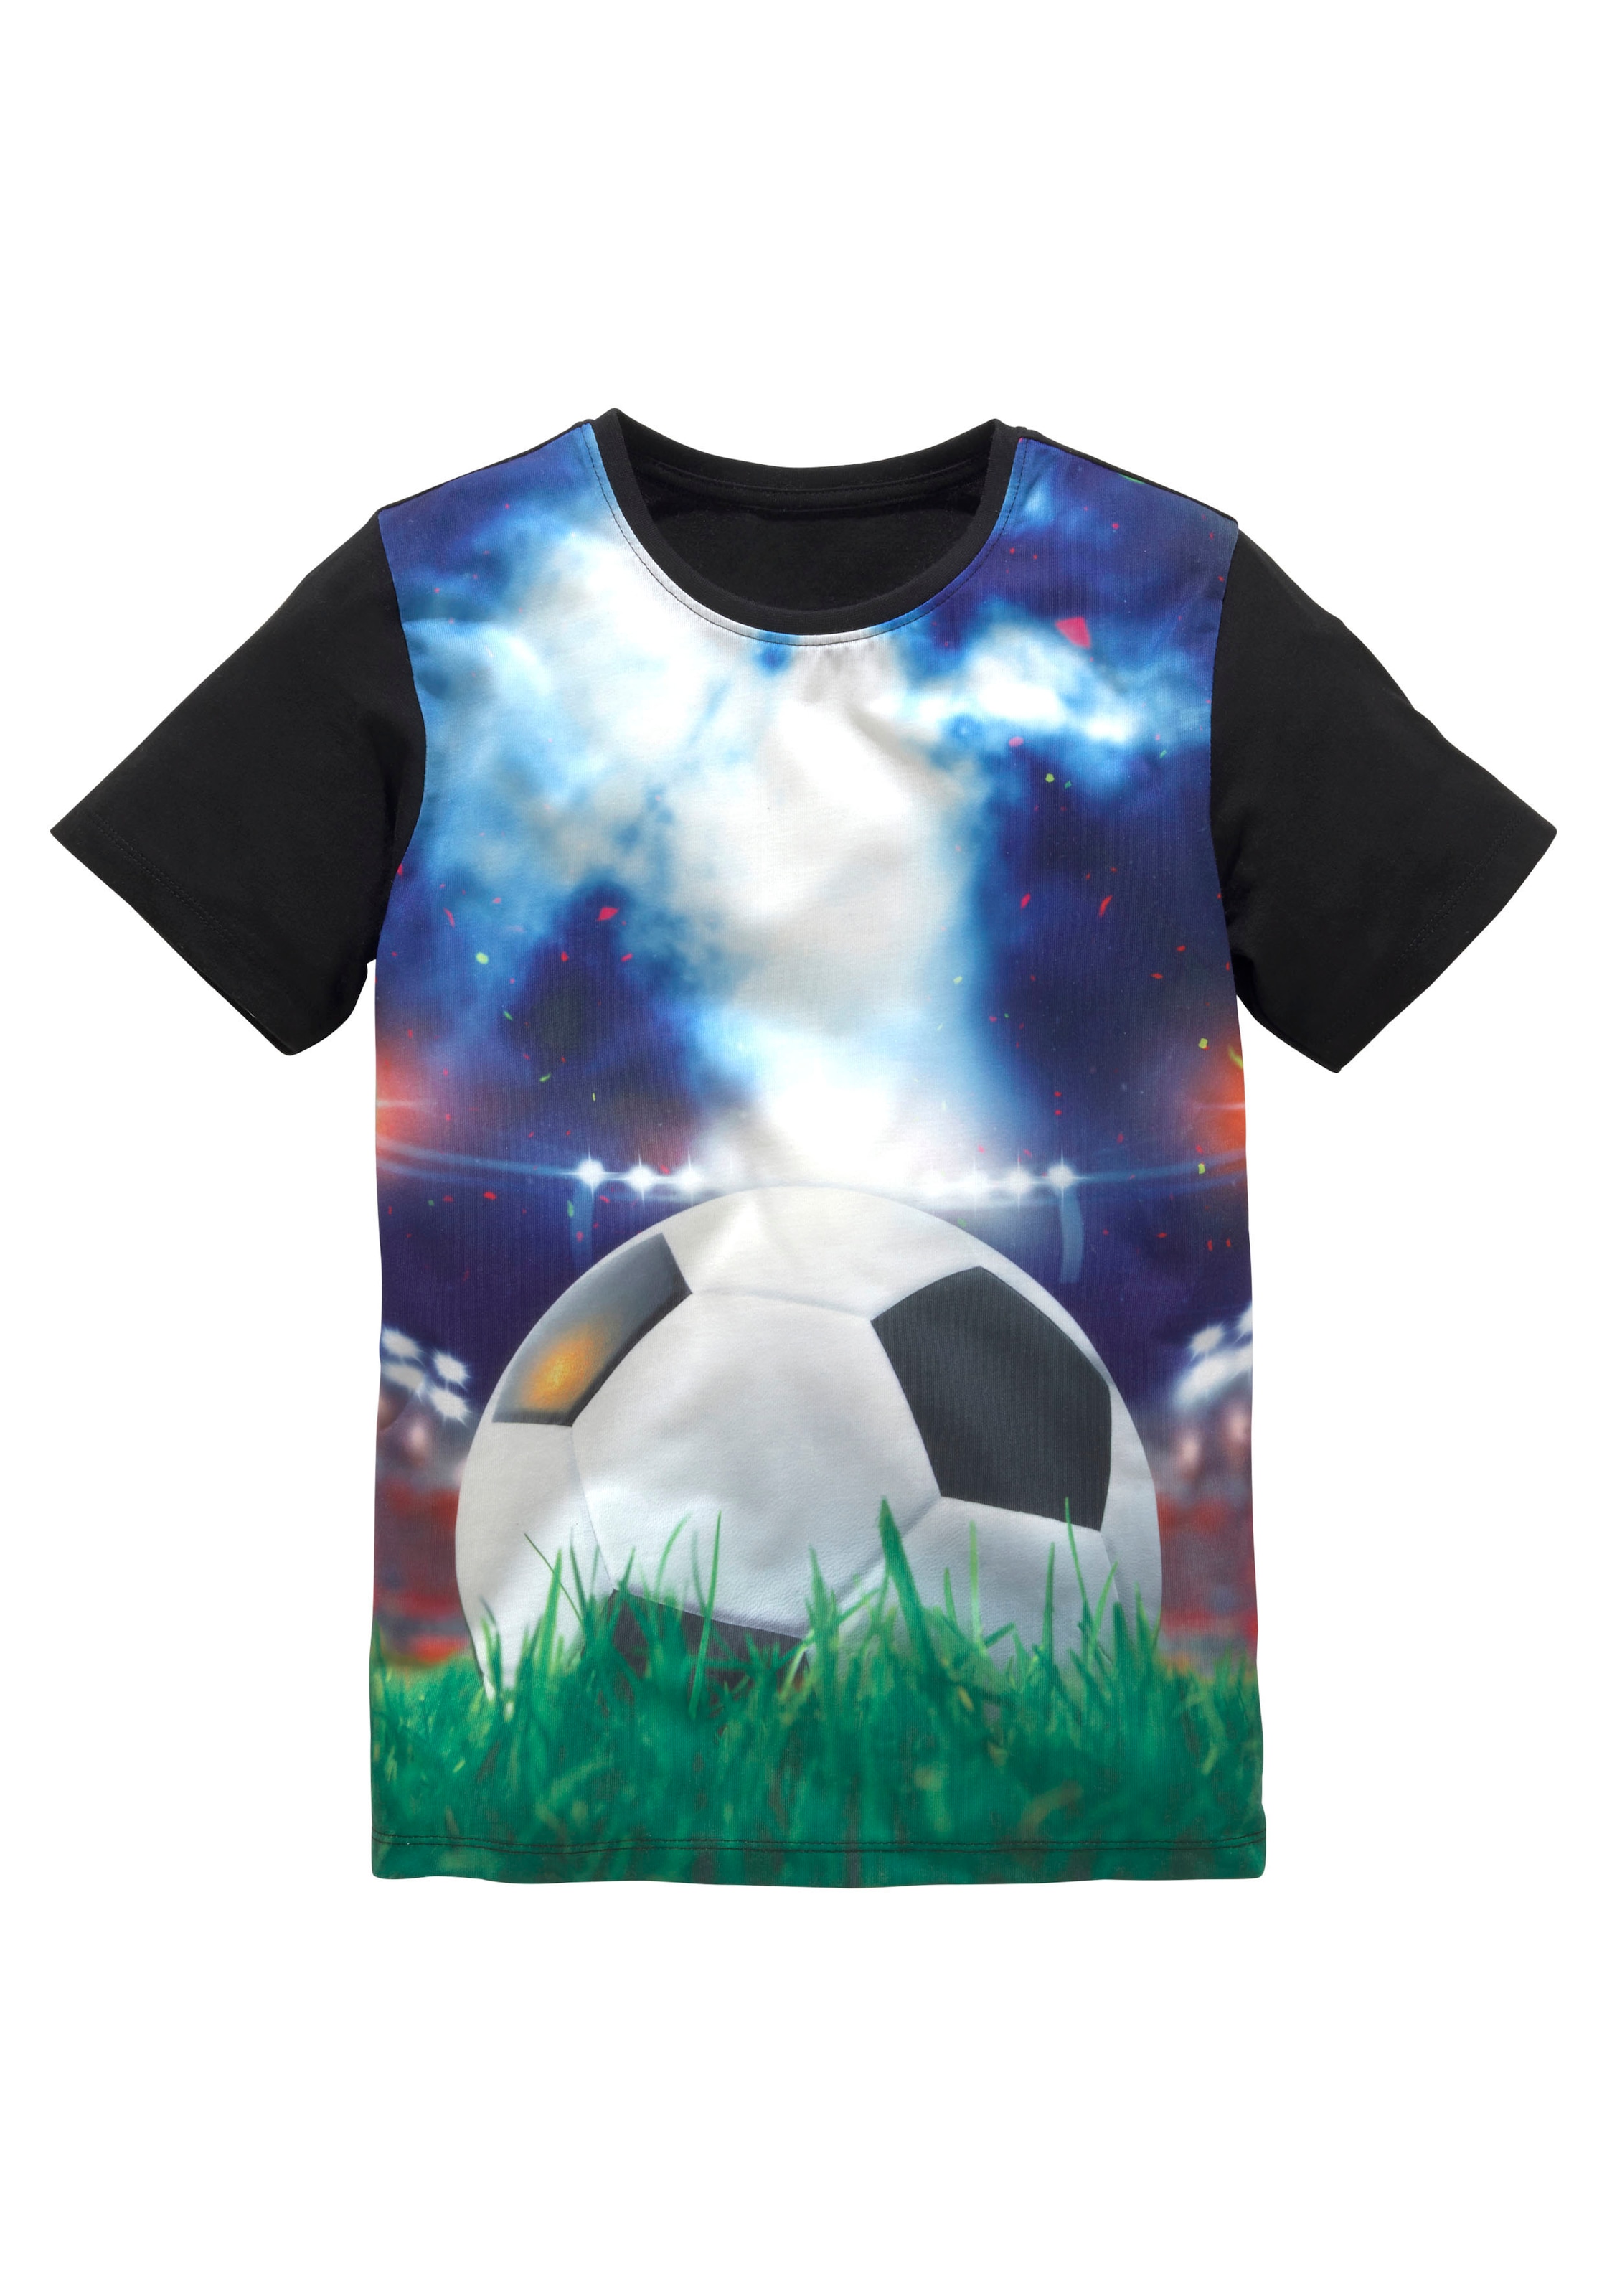 Online »FUSSBALL« OTTO im KIDSWORLD T-Shirt Shop